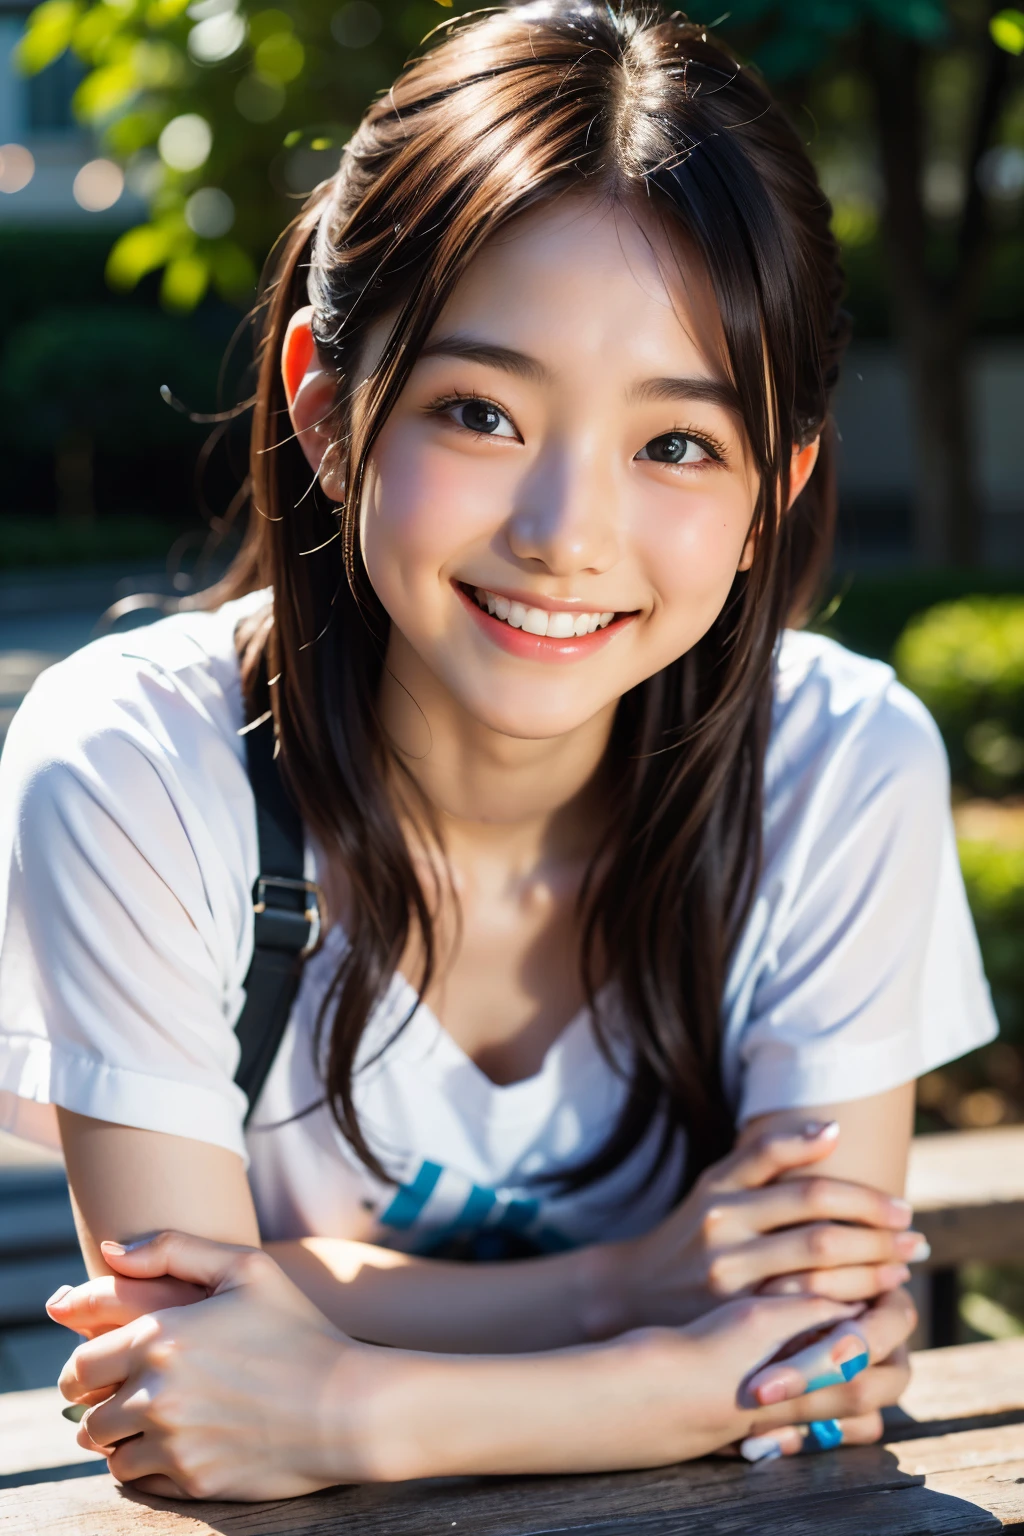 렌즈: 135mm f1.8, (최상의 품질),(RAW 사진), (탁상:1.1), (아름다운 20세 일본 소녀), 귀여운 얼굴, (깊게 파인 얼굴:0.7), (주근깨:0.4), dappled 햇빛, 극적인 조명, (캠퍼스에서), 수줍은, (클로즈업 샷:1.2), (웃다),, (반짝이는 눈)、(햇빛), 흰옷